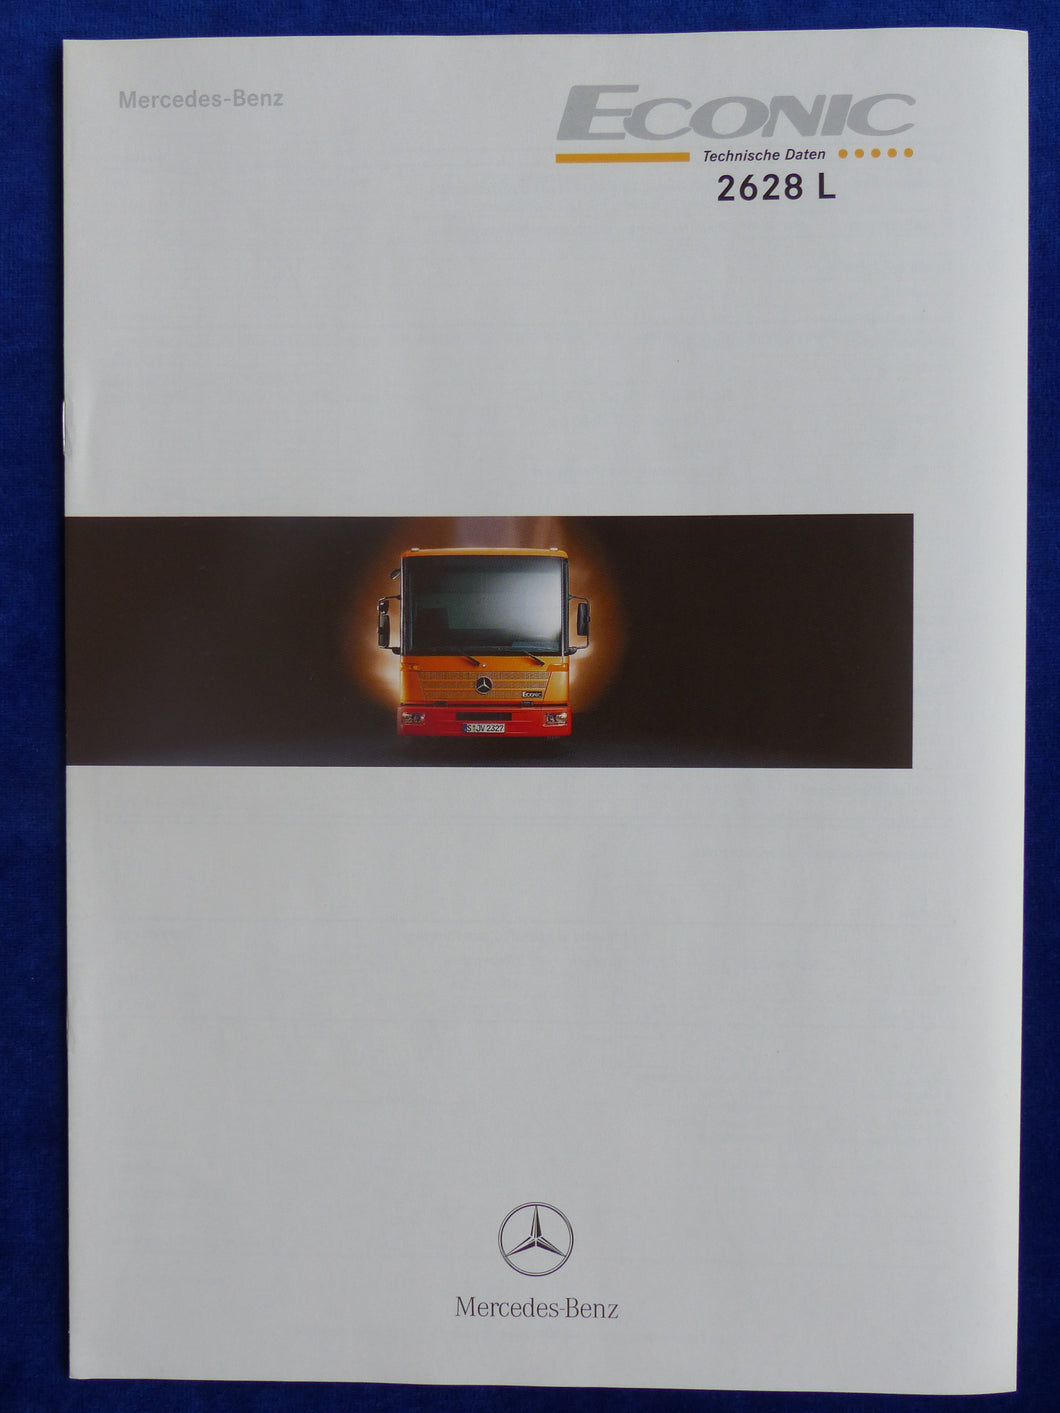 Mercedes-Benz LKW Econic 2628 L - Technische Daten - Prospekt Brochure 02.2000